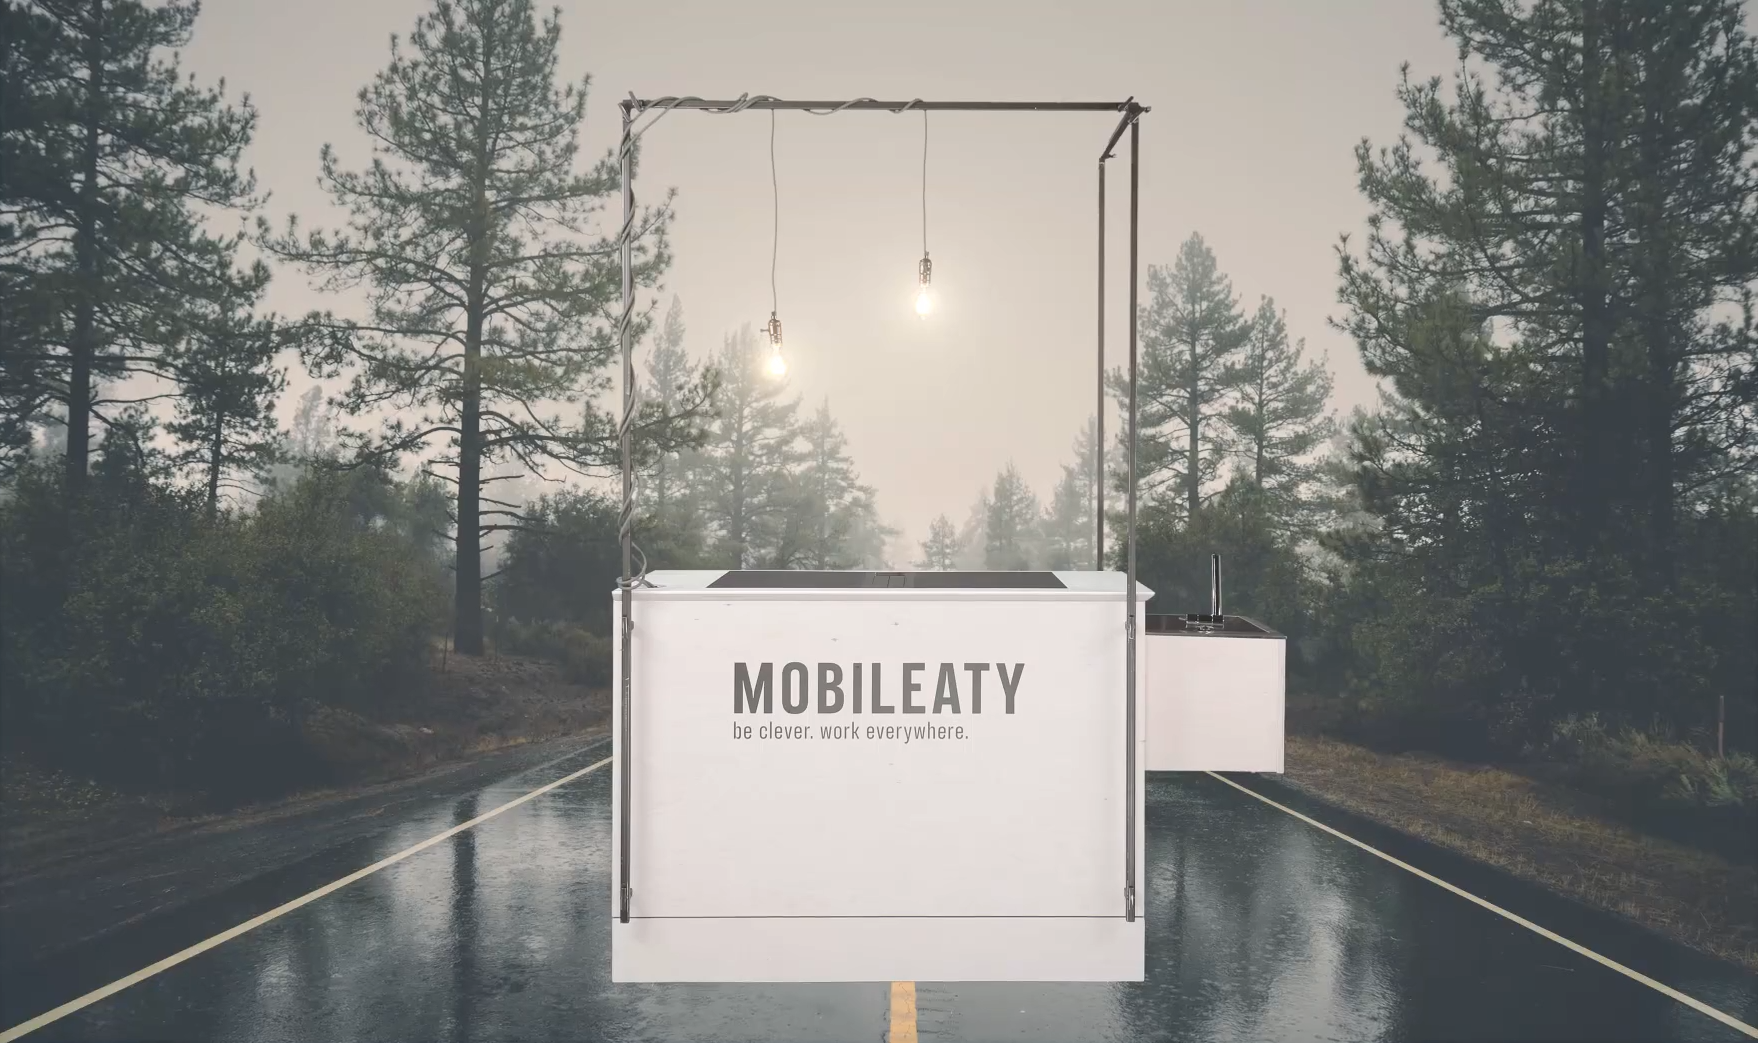 mobile Bar mit Mobileaty Schriftzug auf verregneter Straße in Nadelwald